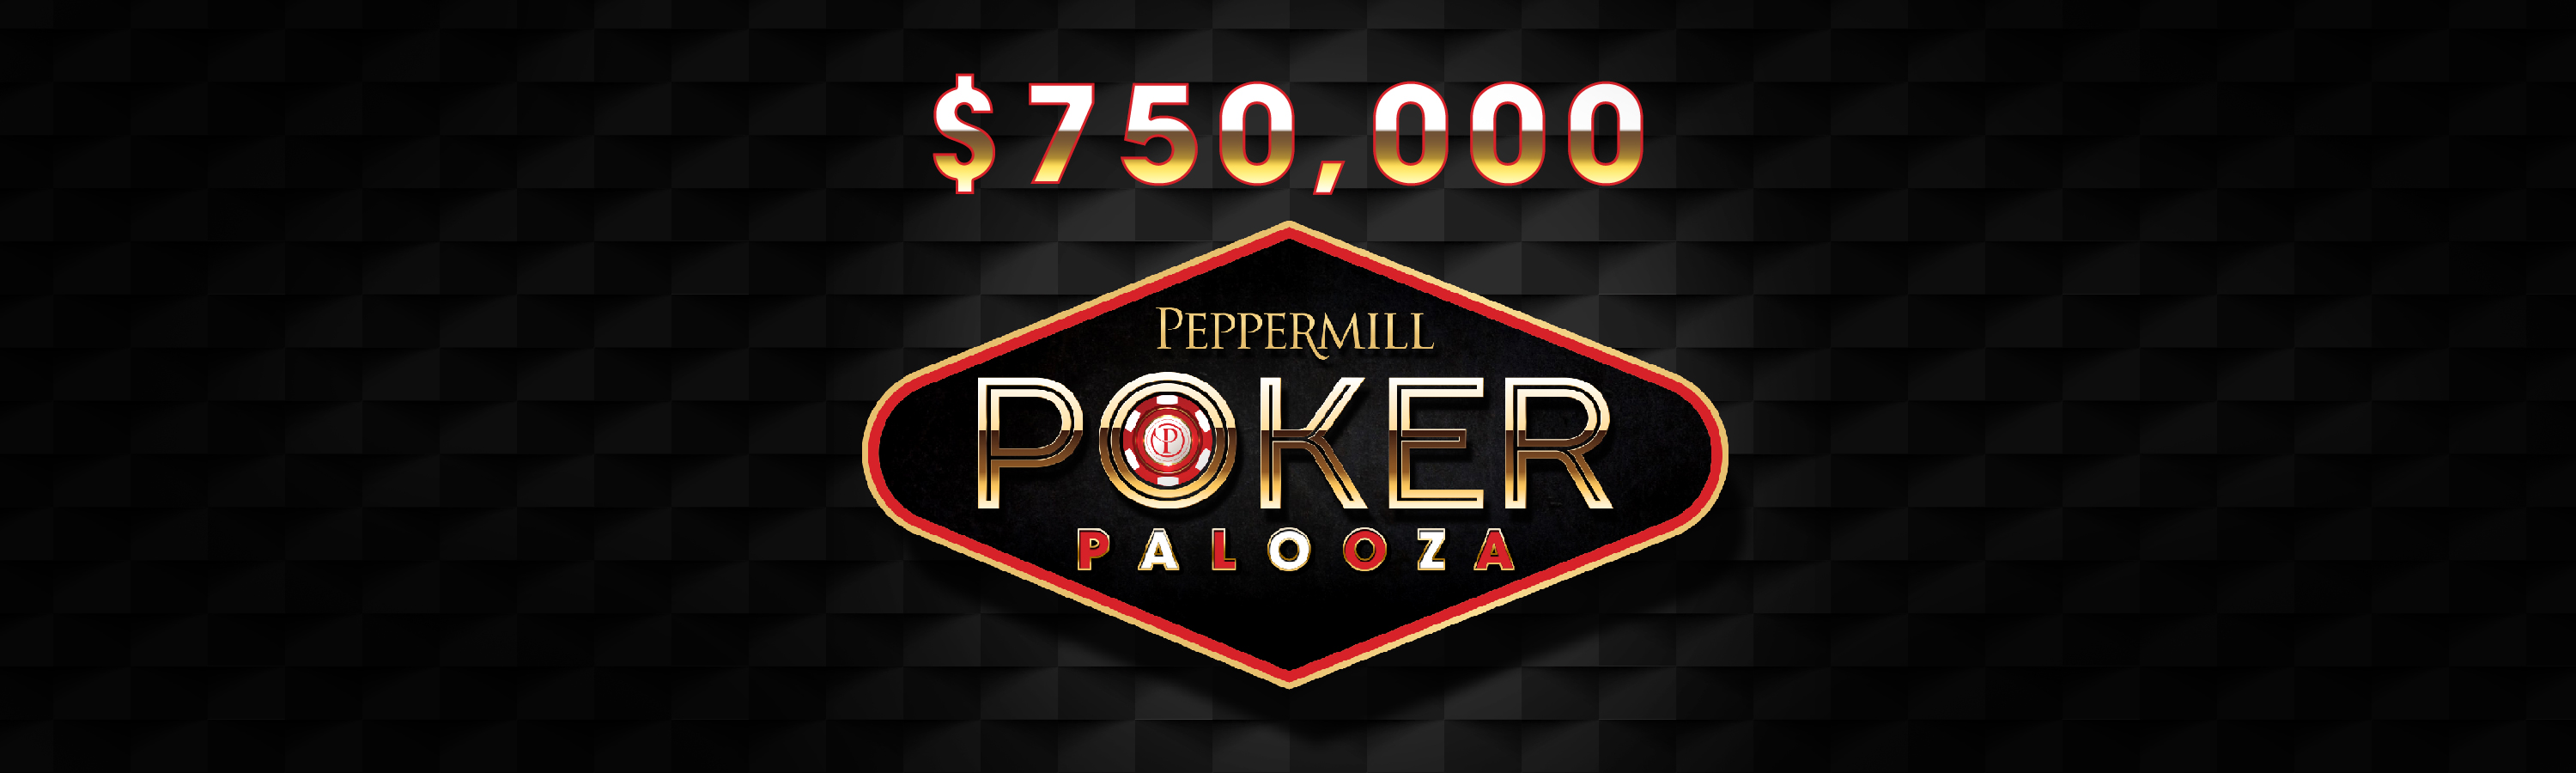 750,000 Peppermill Poker Palooza